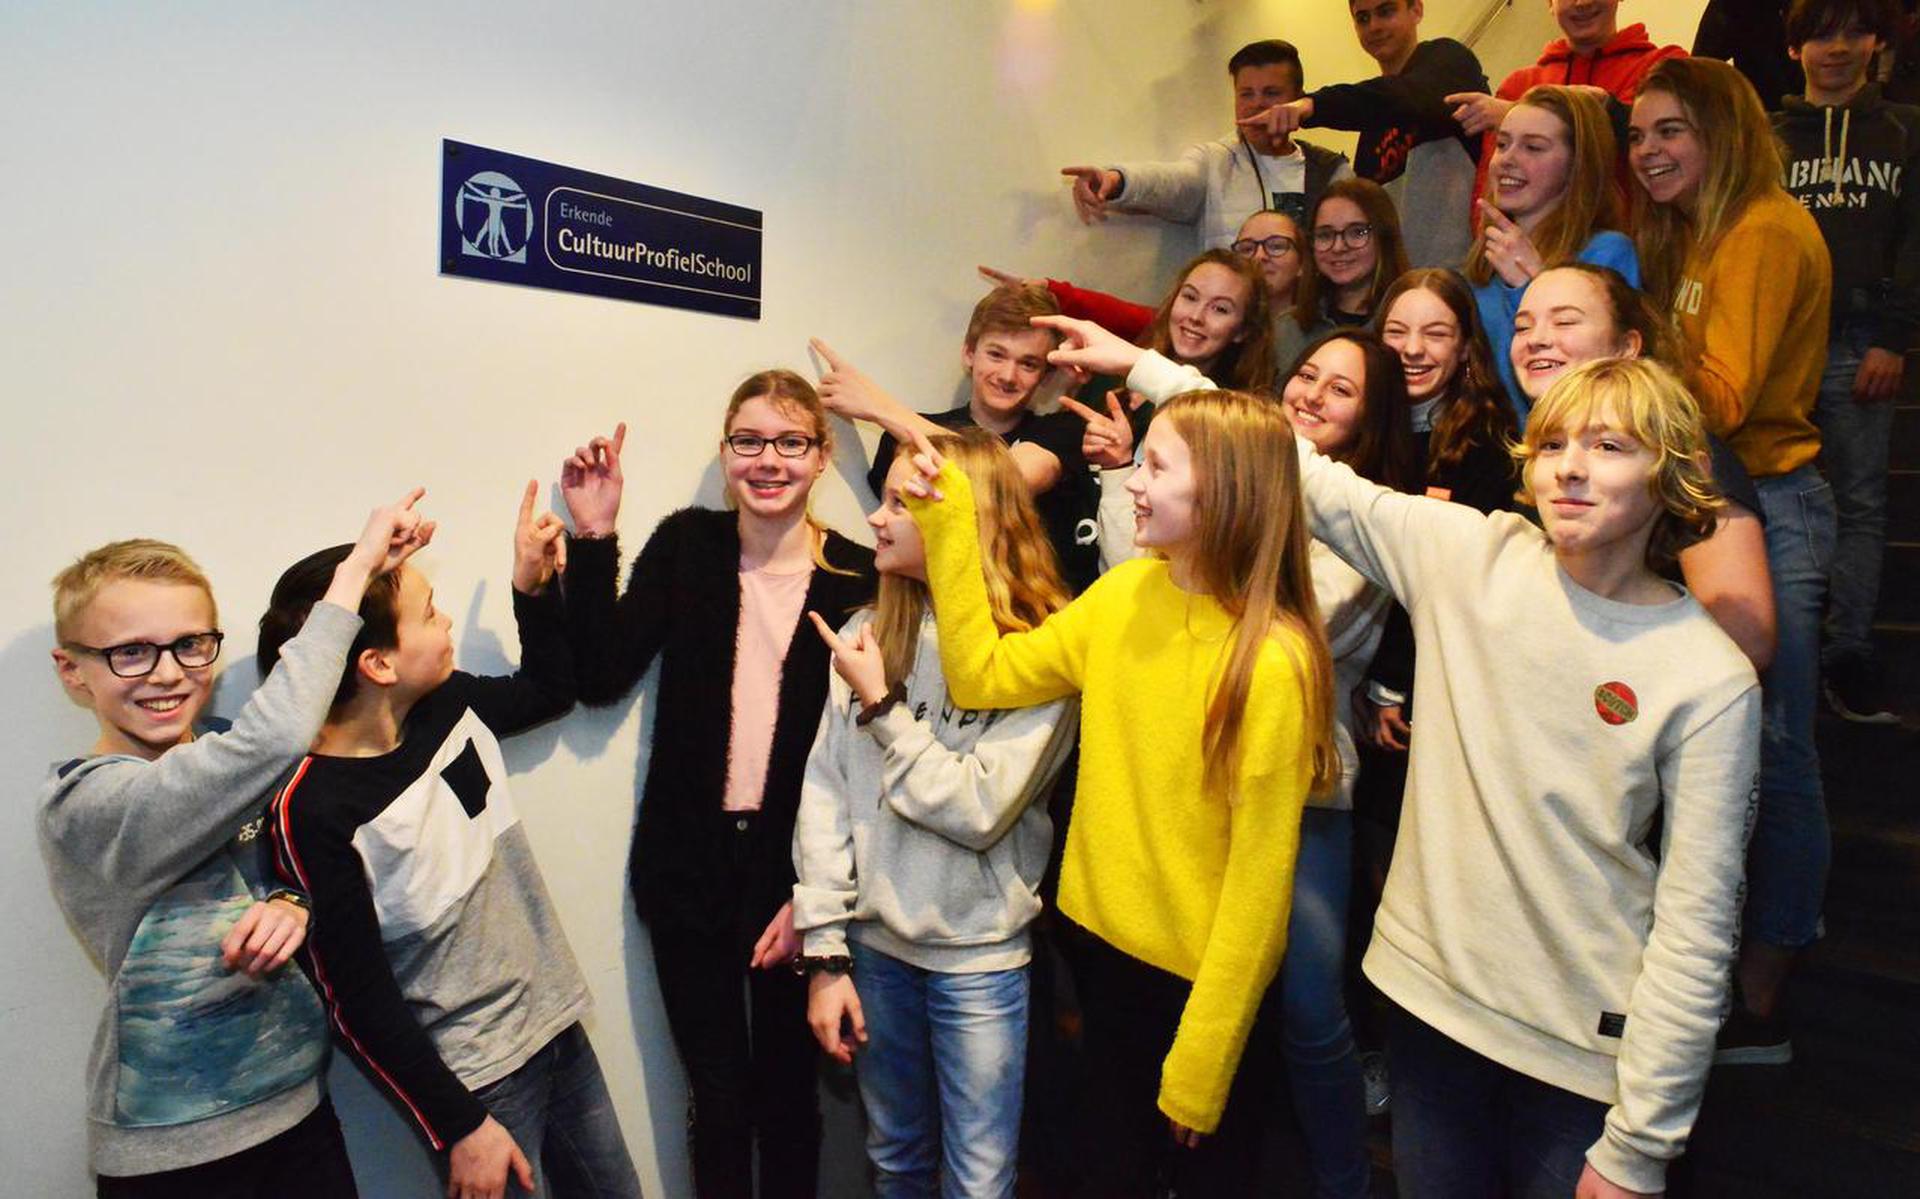 Stad & Esch ontving het predicaat 'CultuurProfielSchool'.